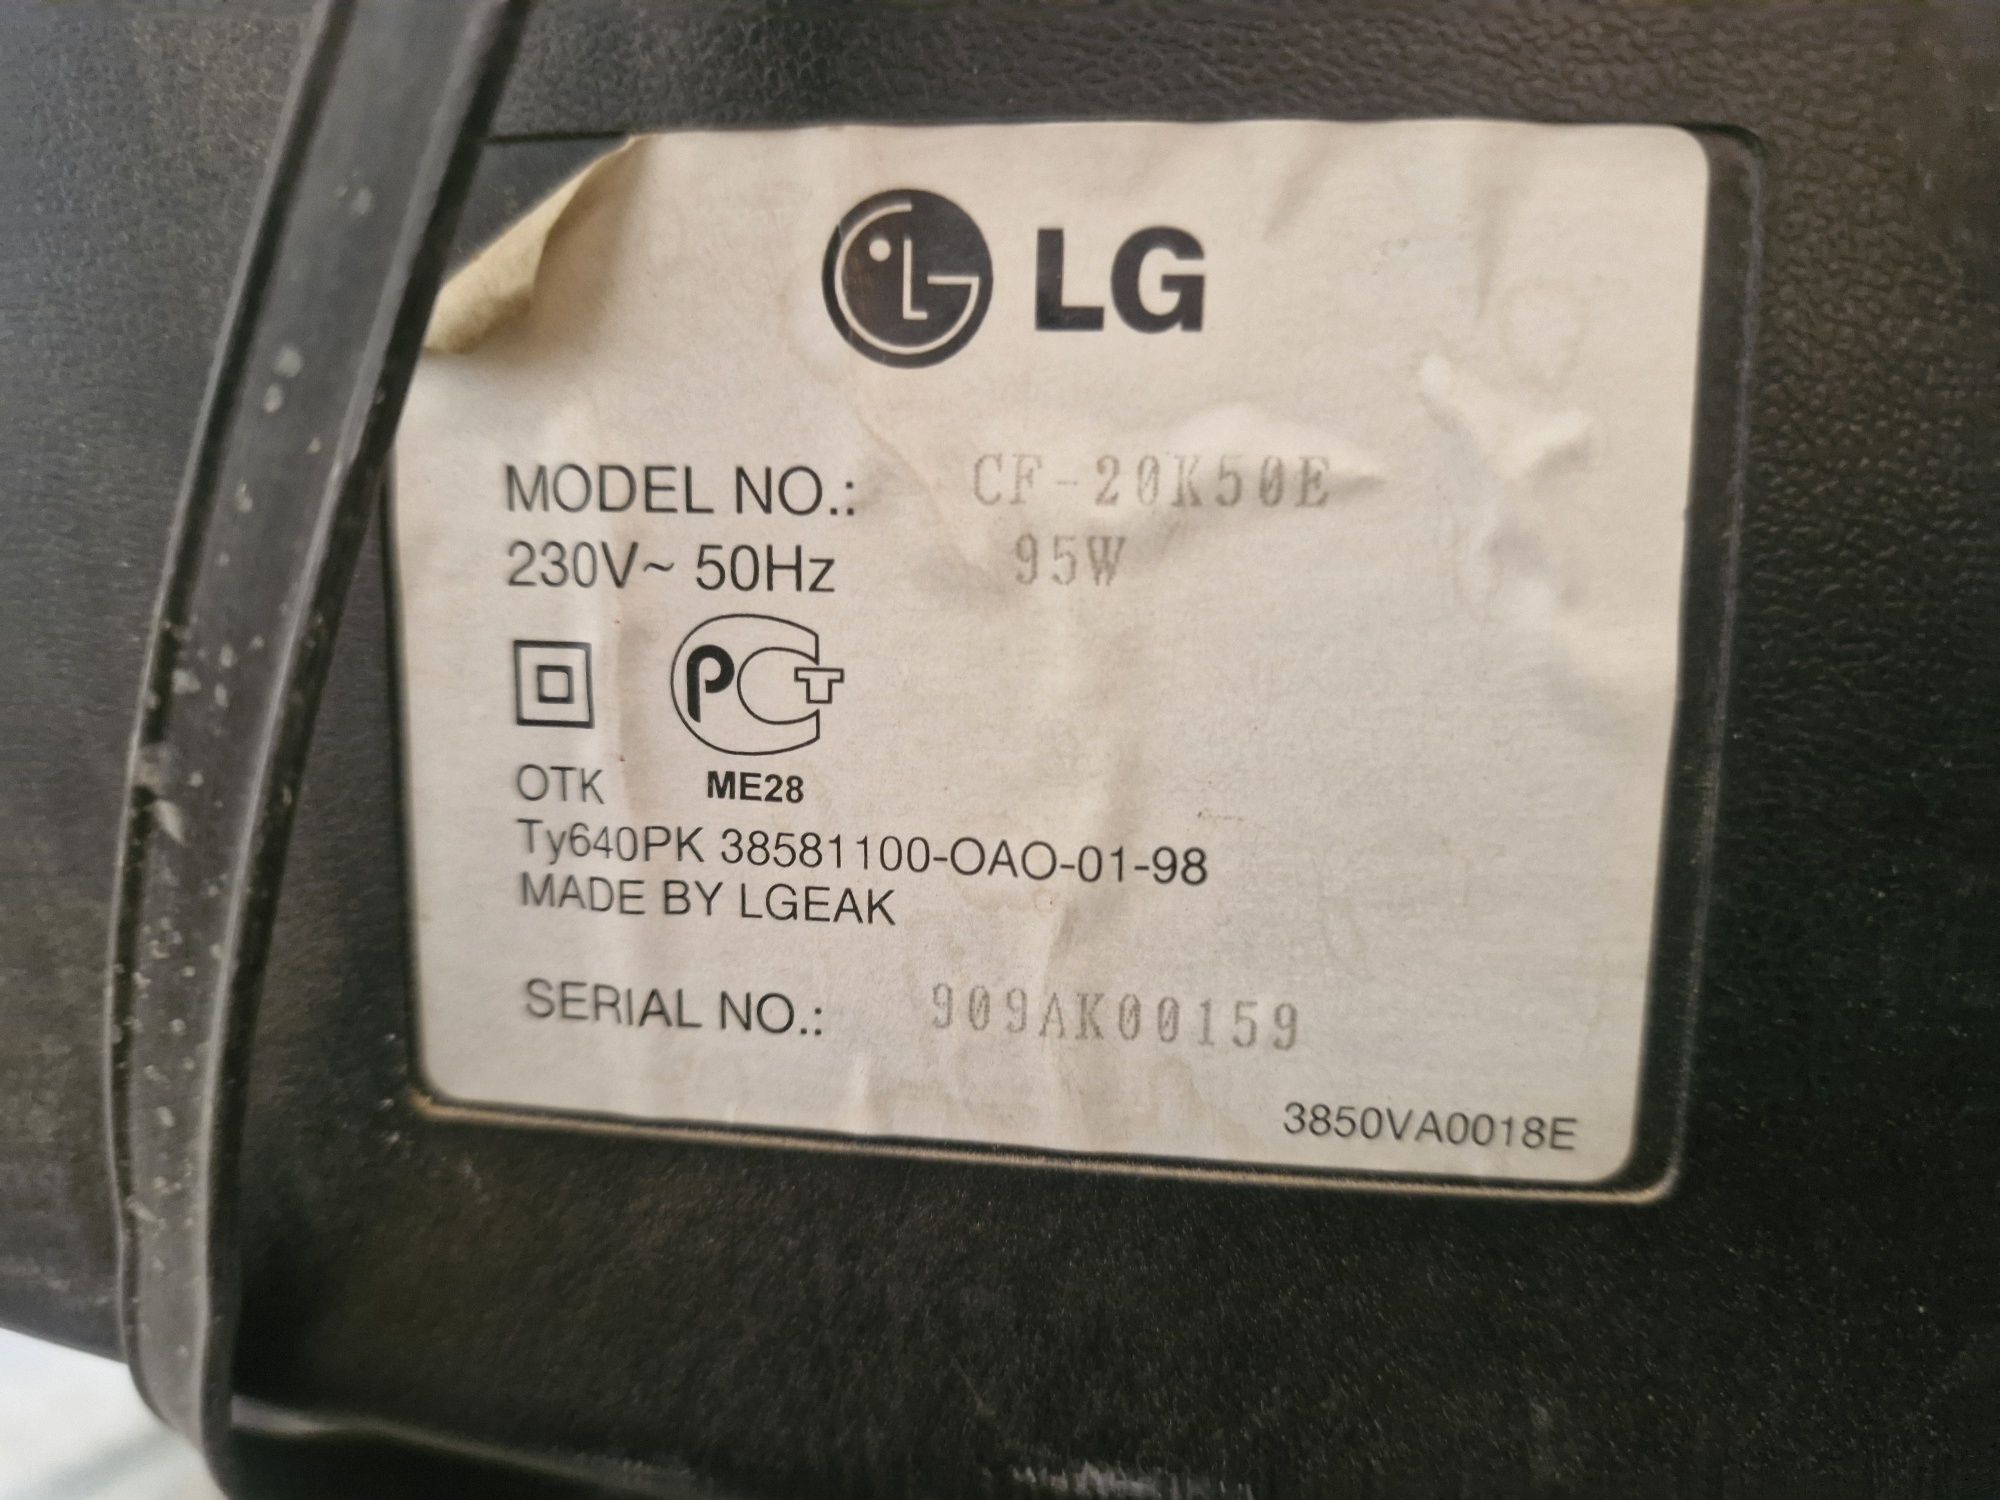 Продаётся бу ТВ LG, диагональ 51.